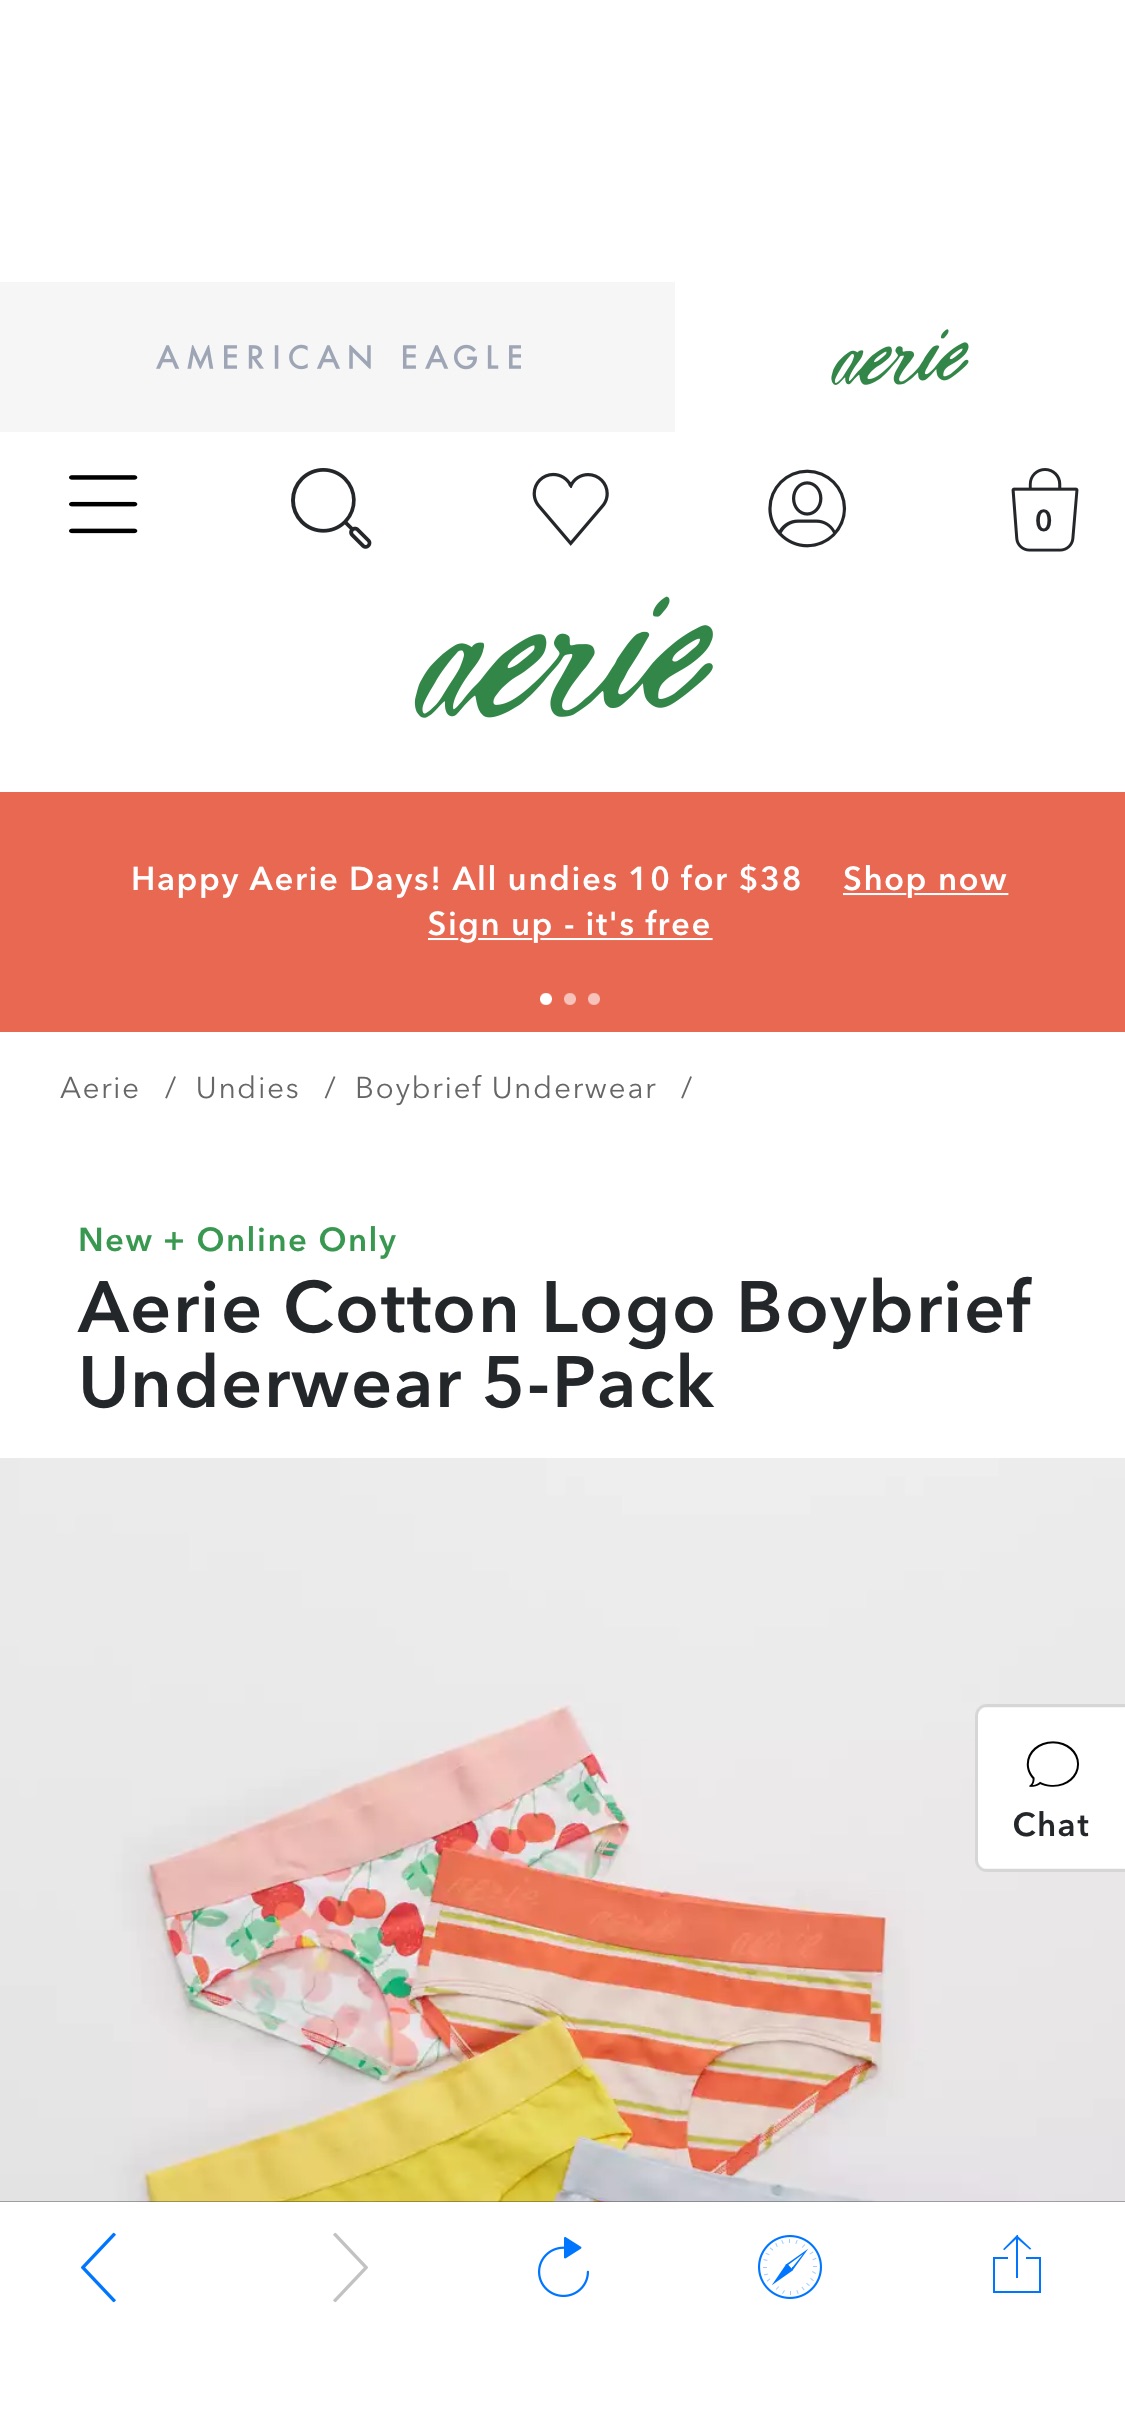 Aerie Cotton Logo Boybrief Underwear 5-Pack 50条$38